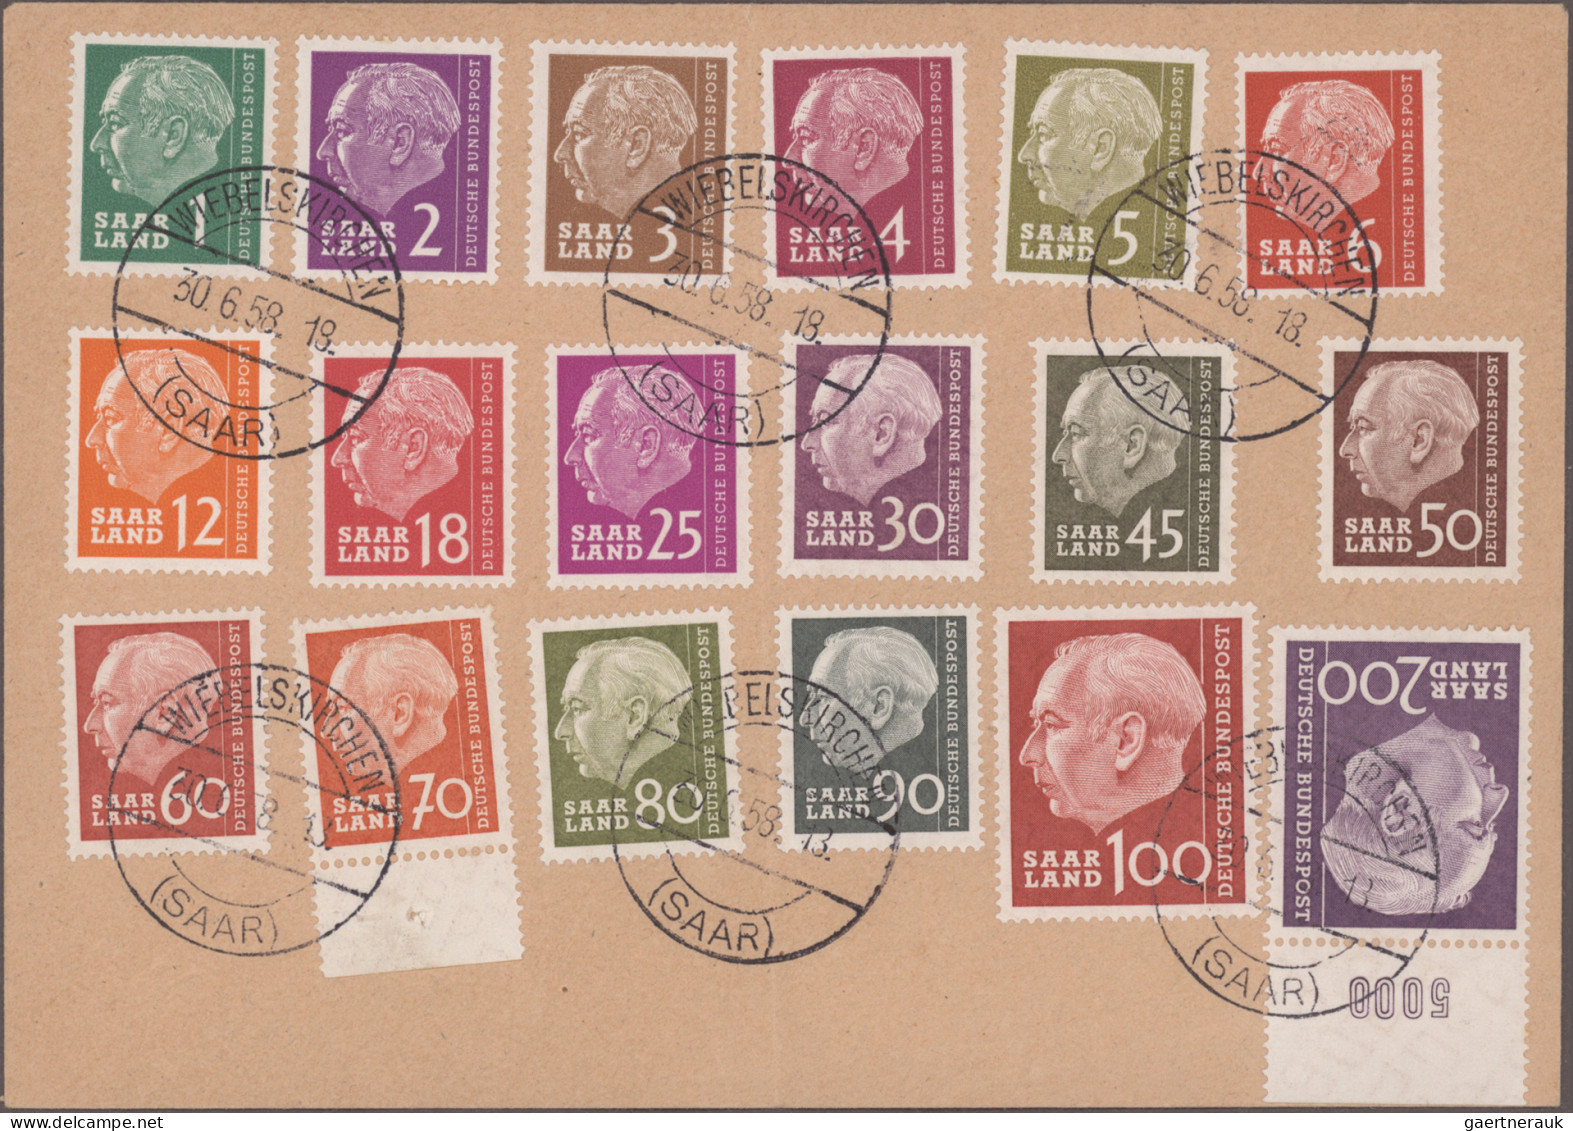 Saarland und OPD Saarbrücken: 1950/1959 Posten von etwa 600 Briefen, Postkarten,